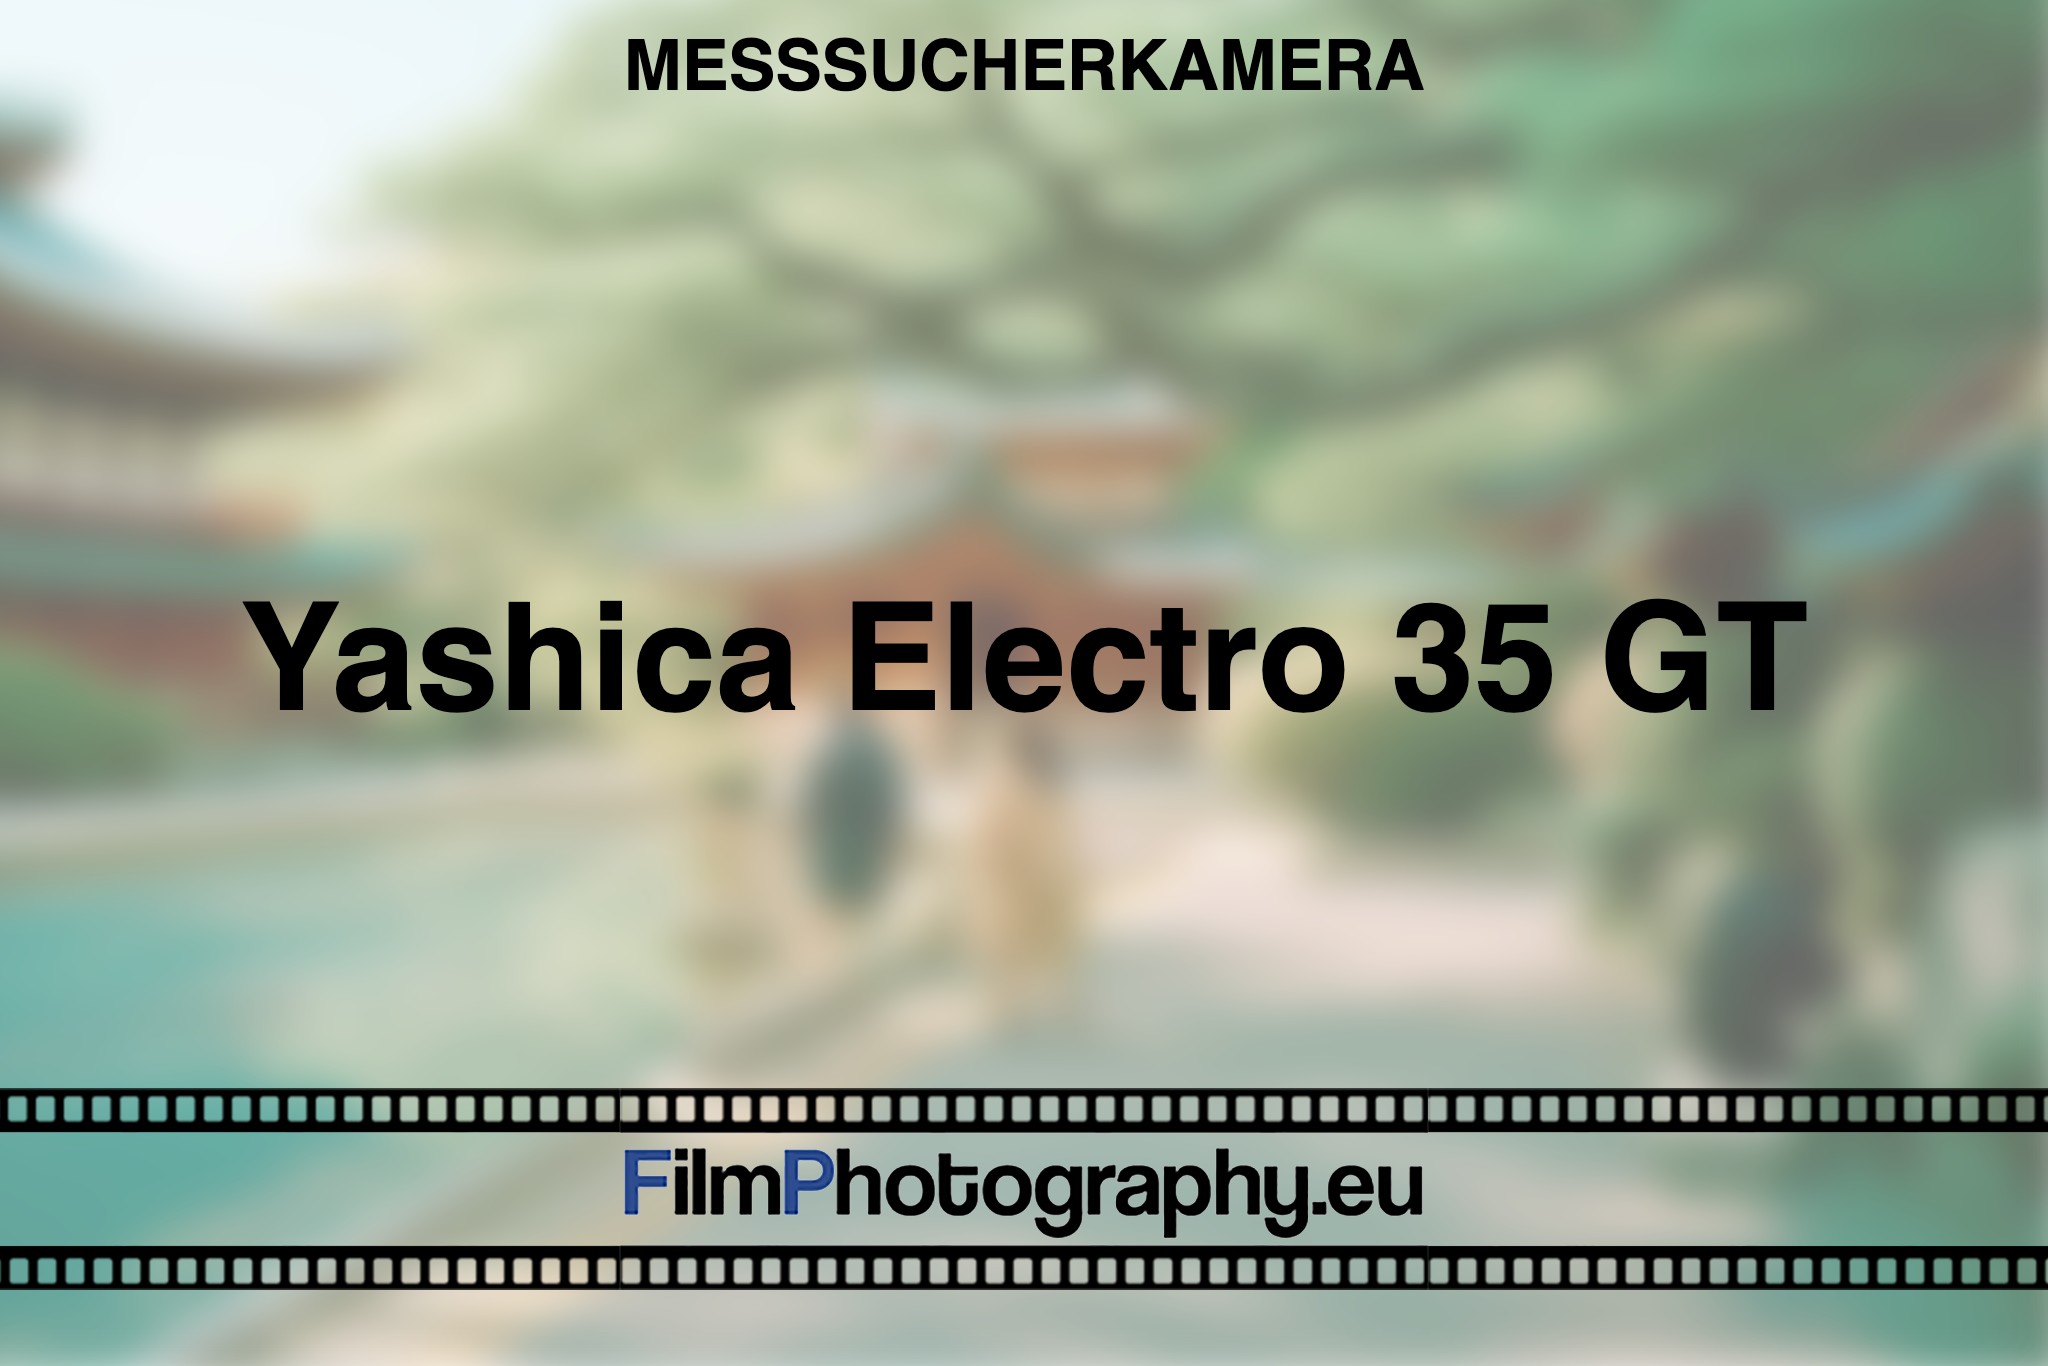 yashica-electro-35-gt-messsucherkamera-bnv